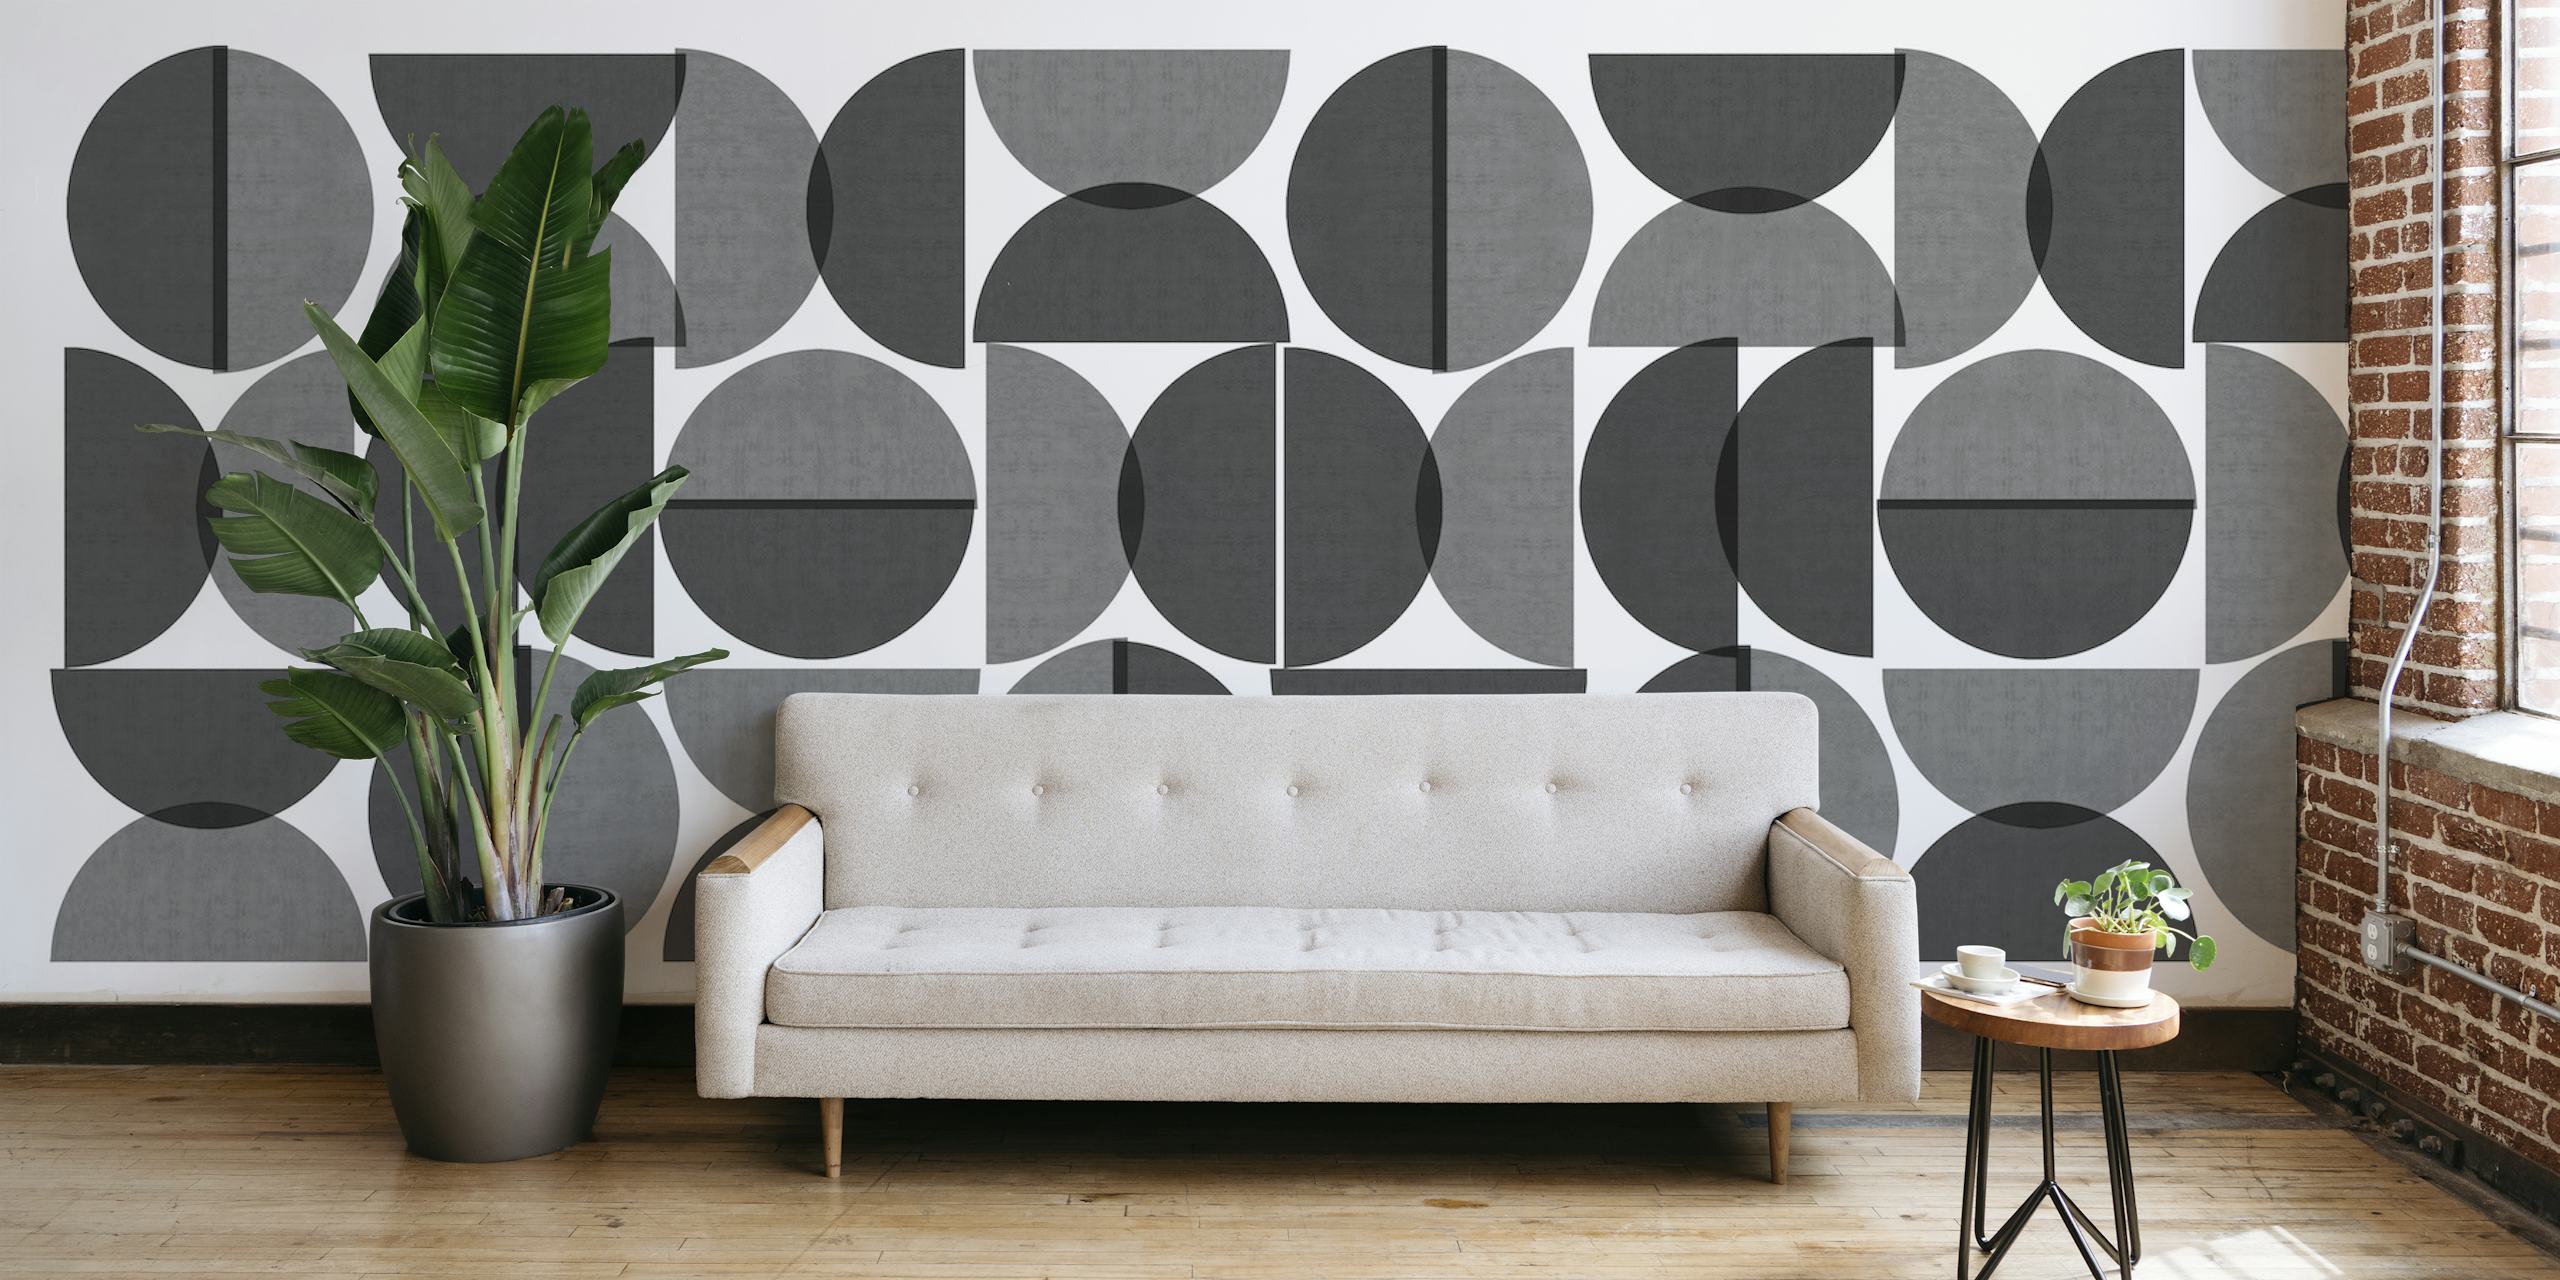 Pattern of circles papel pintado